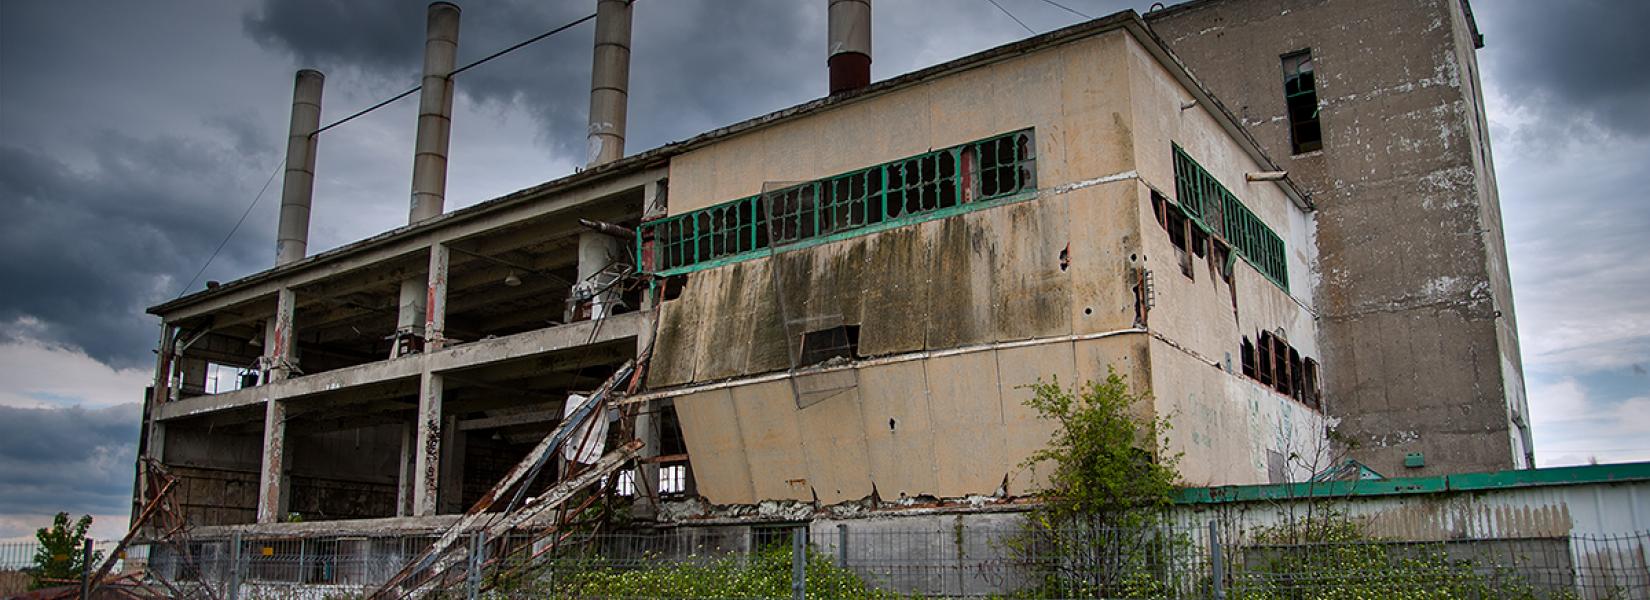 L'usine abandonnée sans nom